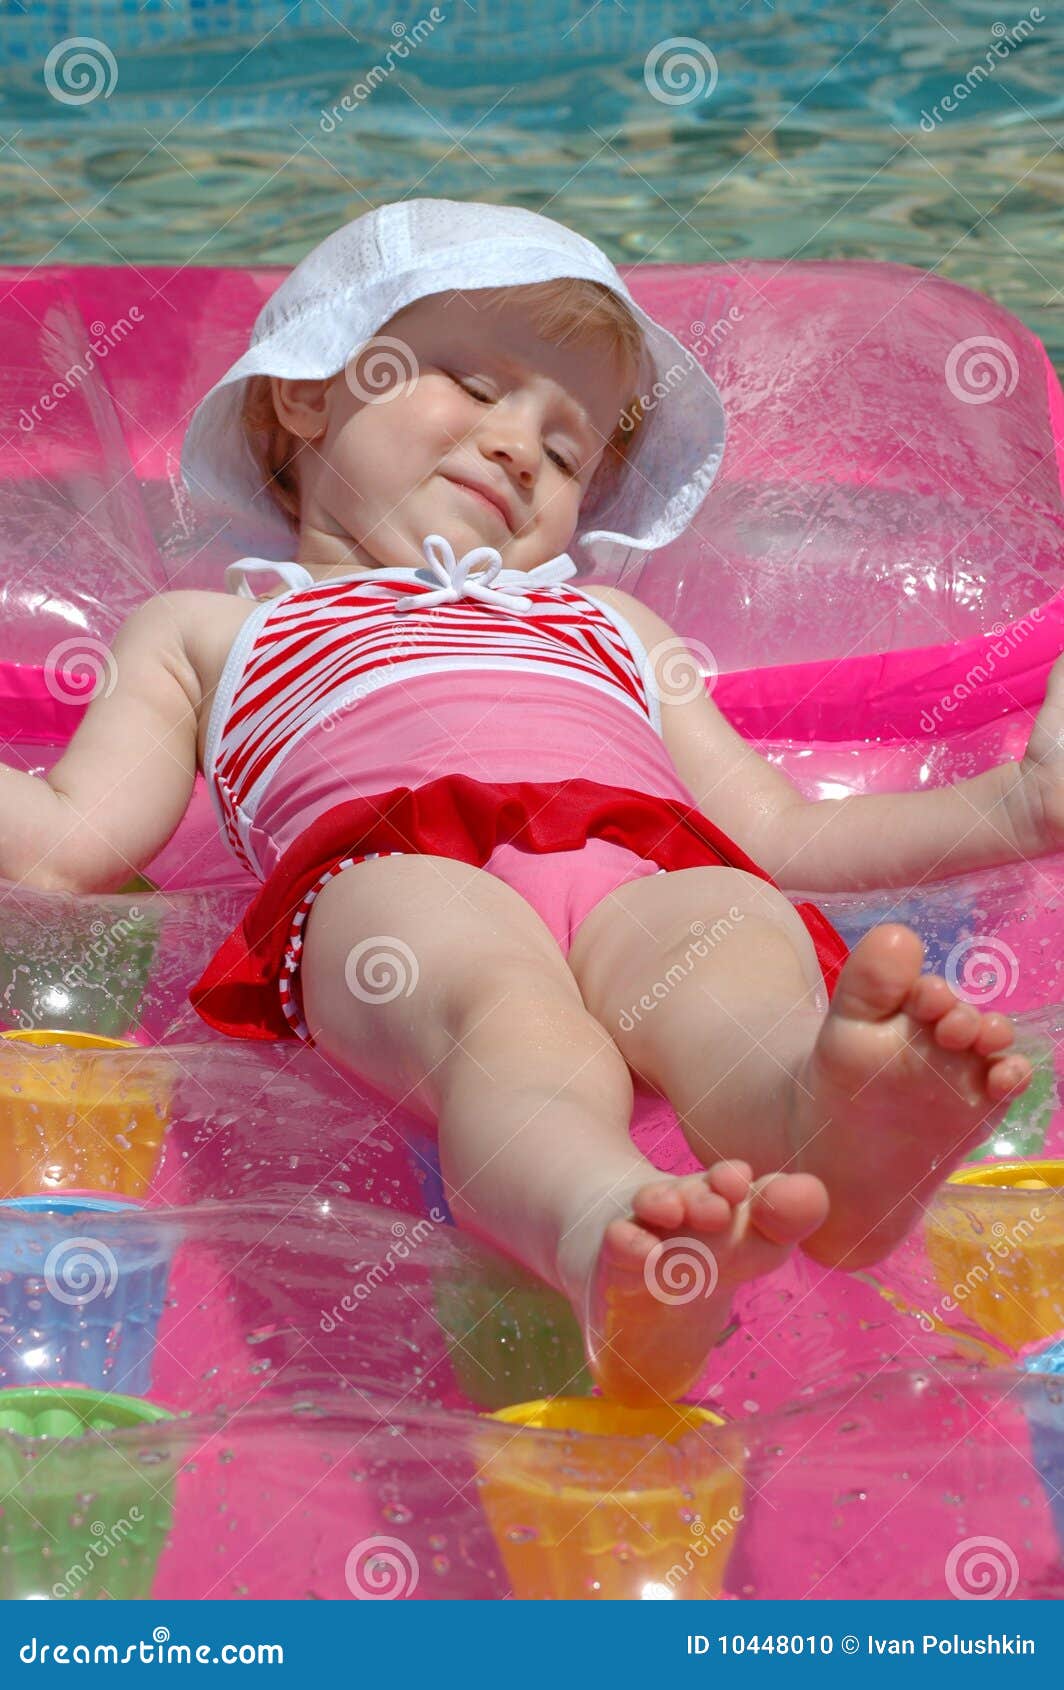 Мокрая плавка. Девочка на надувном матрасе. Девочка плавает на надувном. Дети купаются в бассейне. Девочки 10 лет в бассейне.